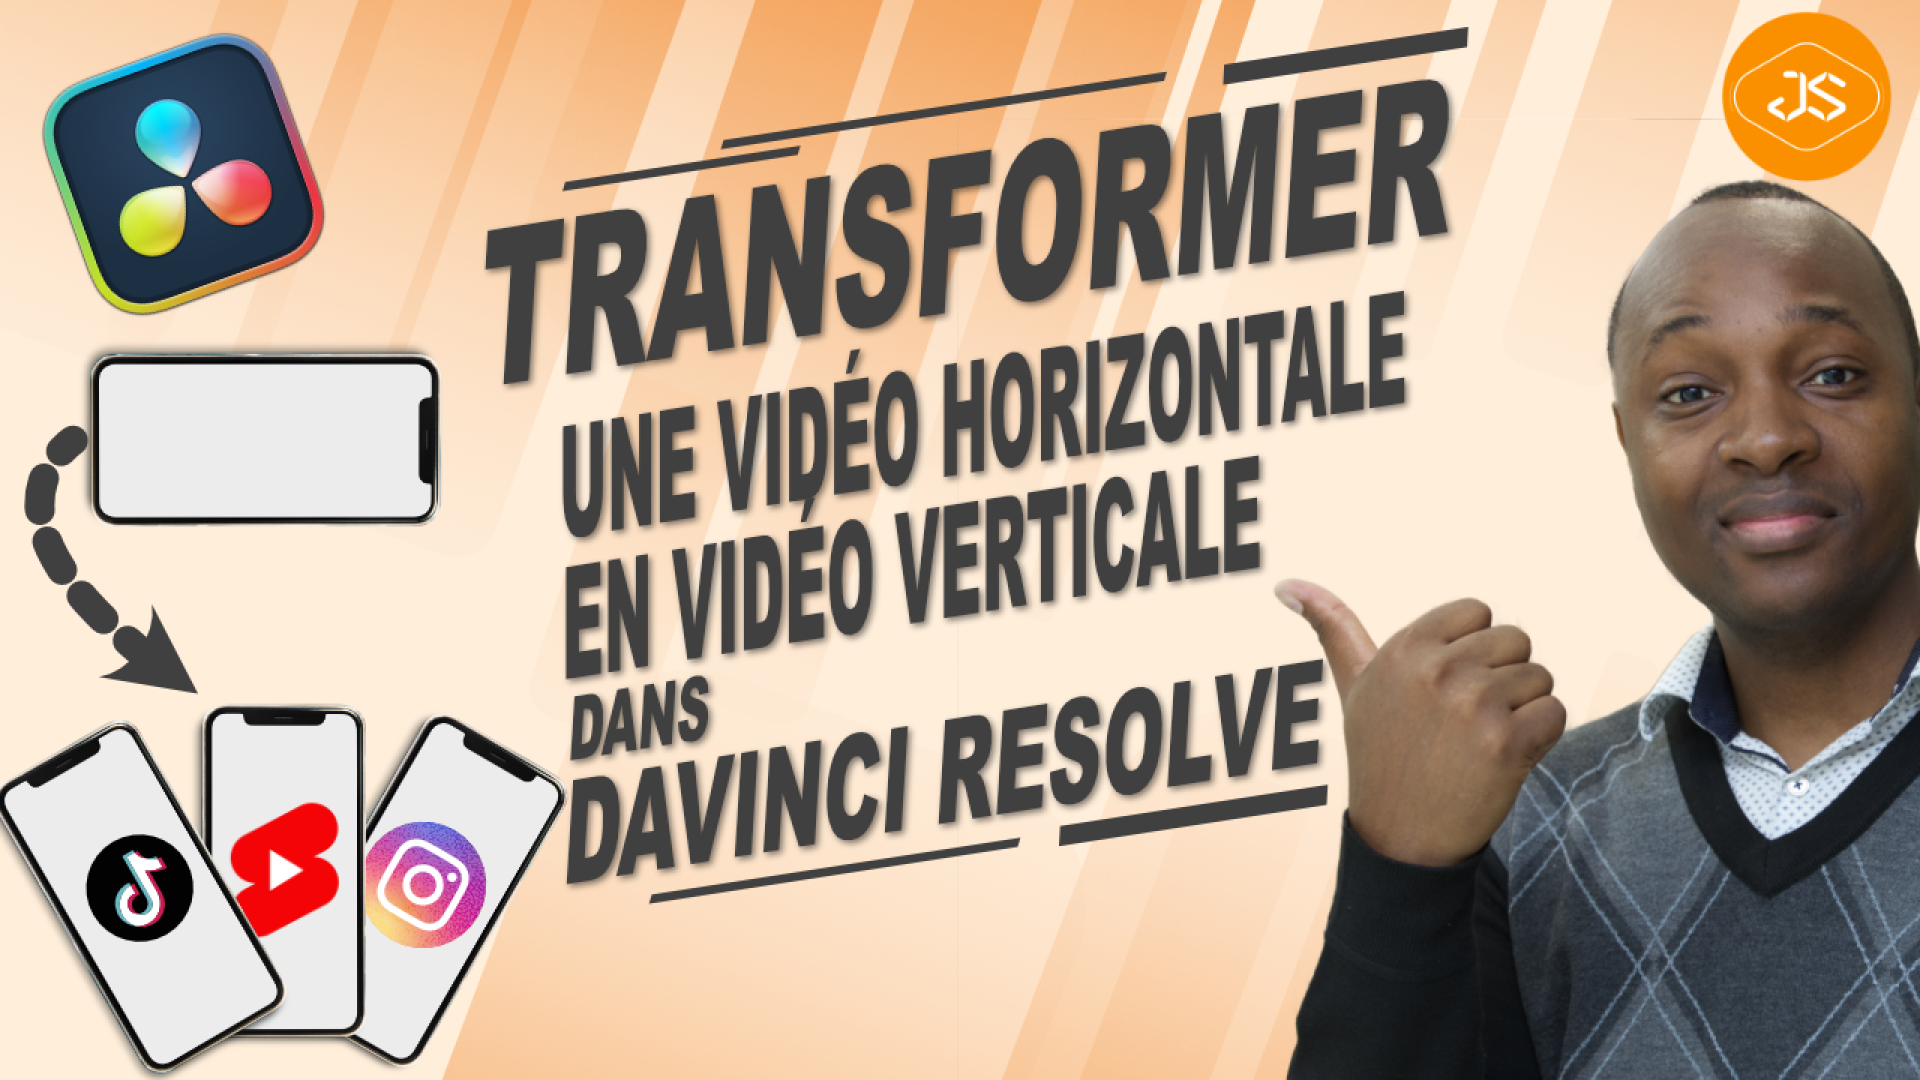 Transformer une vidéo horizontale en vidéo verticale dans DaVinci Resolve